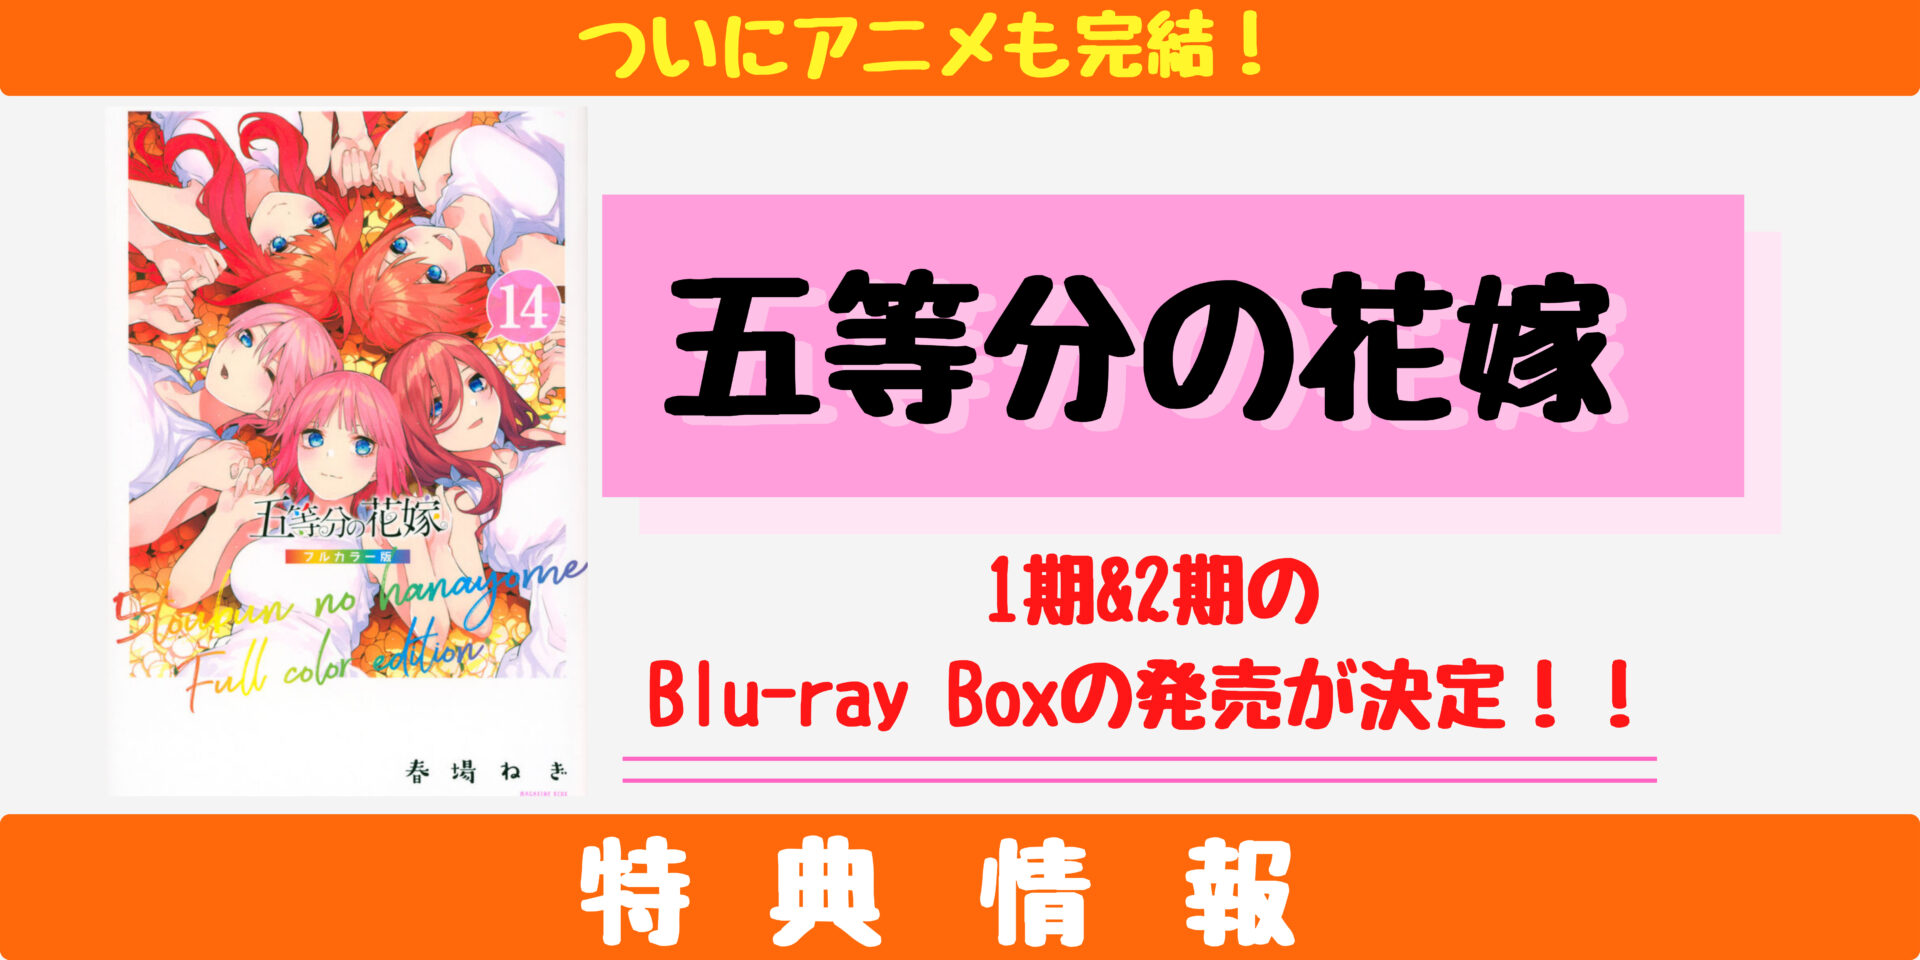 【五等分の花嫁】Bul-rayBoxの特典情報